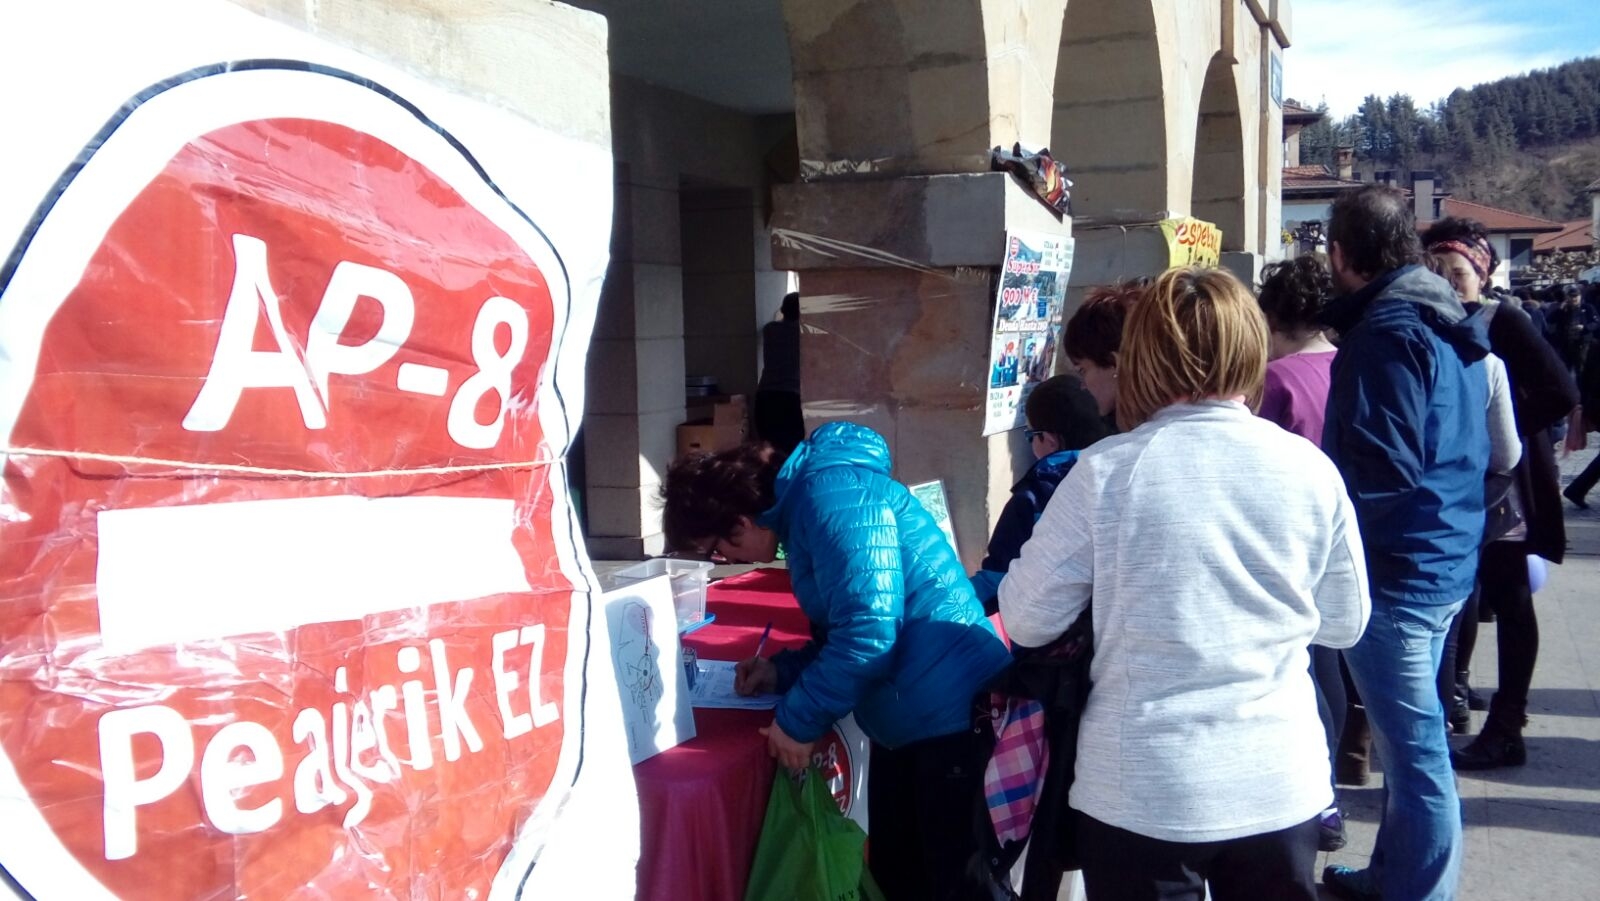 Integrantes de la plataforma AP-8 Peajerik Ez recogiendo firmas esta mañana en Abadiño.